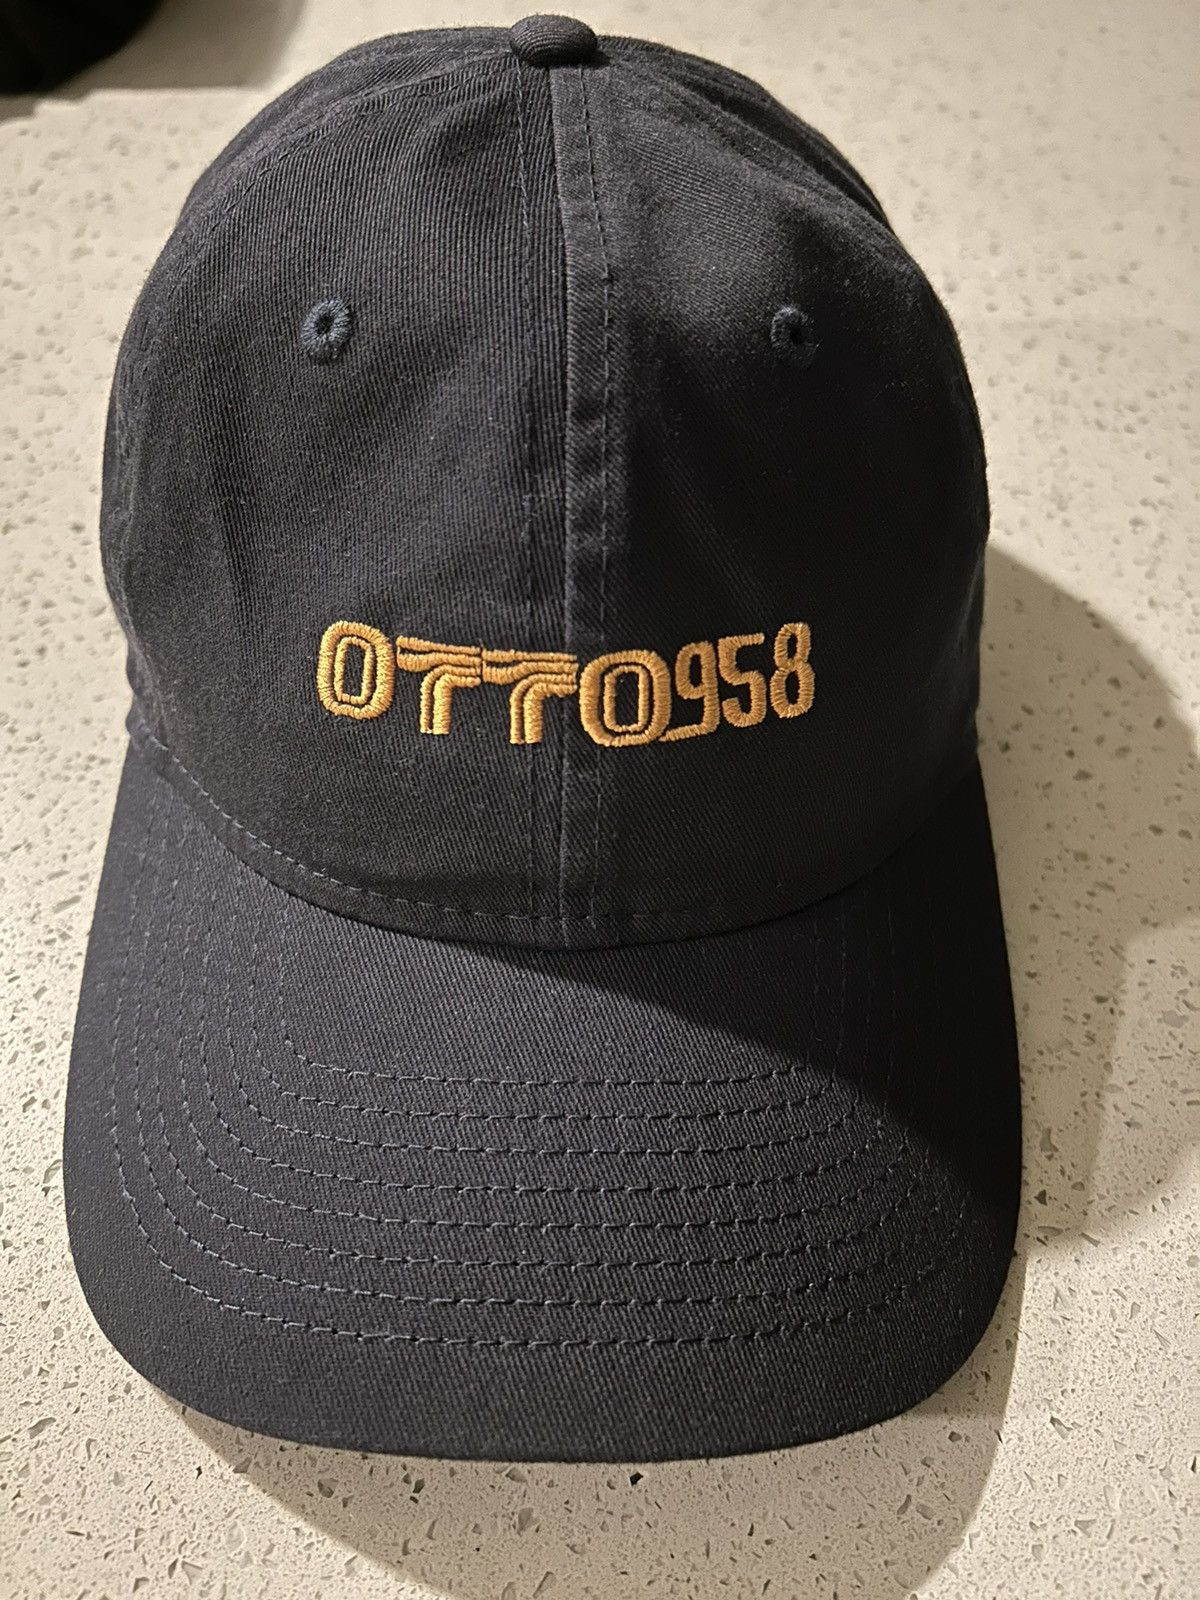 Men's OTTO 958 Hats | Grailed